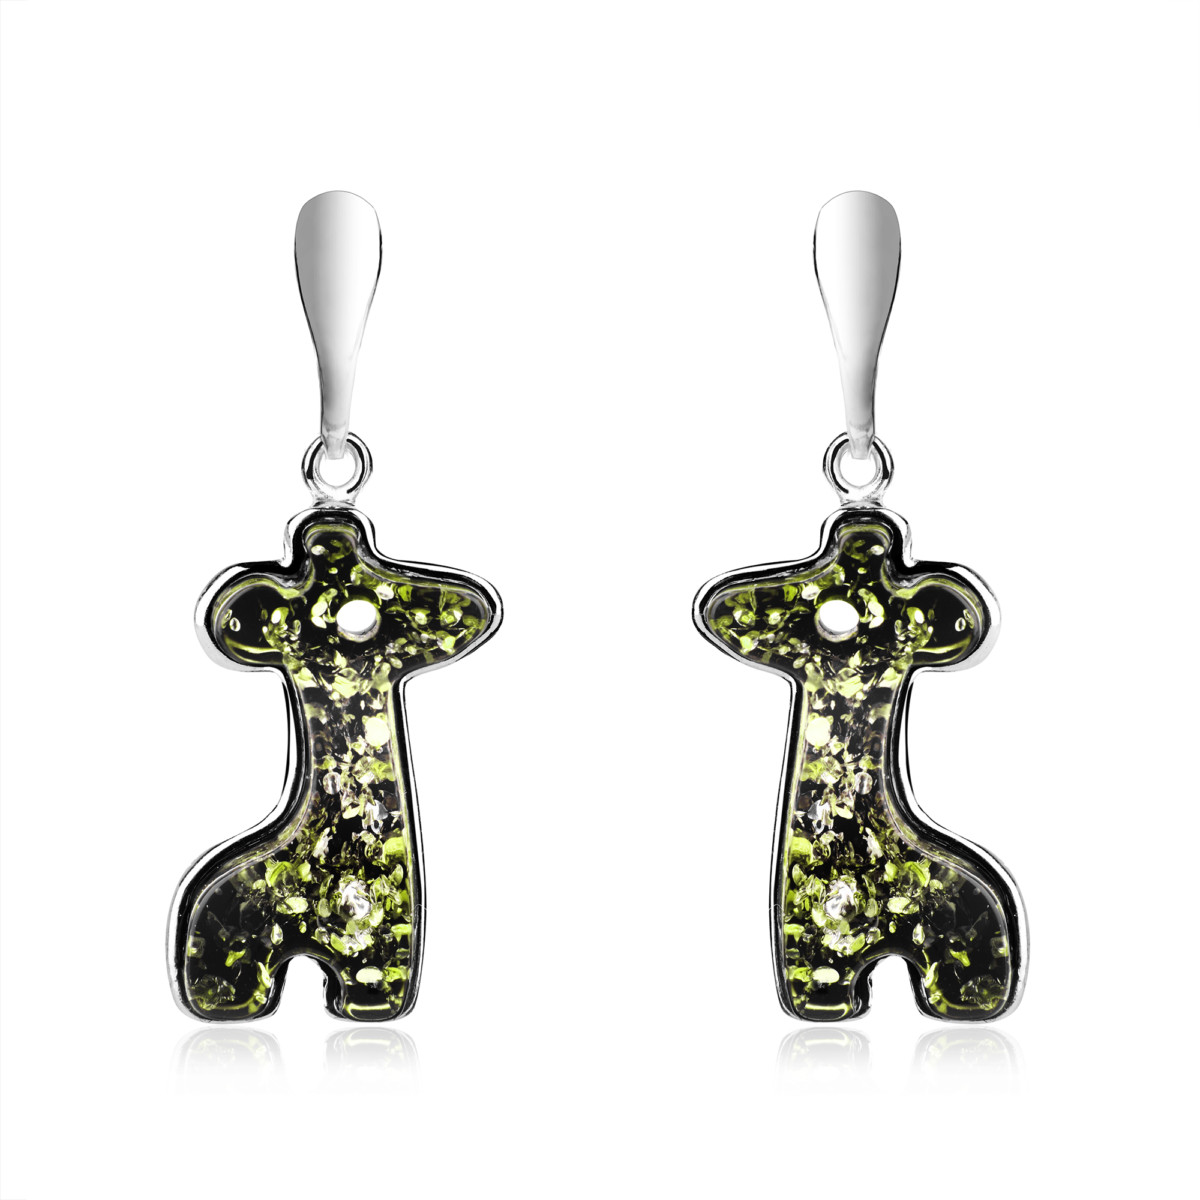 Kolczyki srebrne z zielonym bursztynem – Giraffe